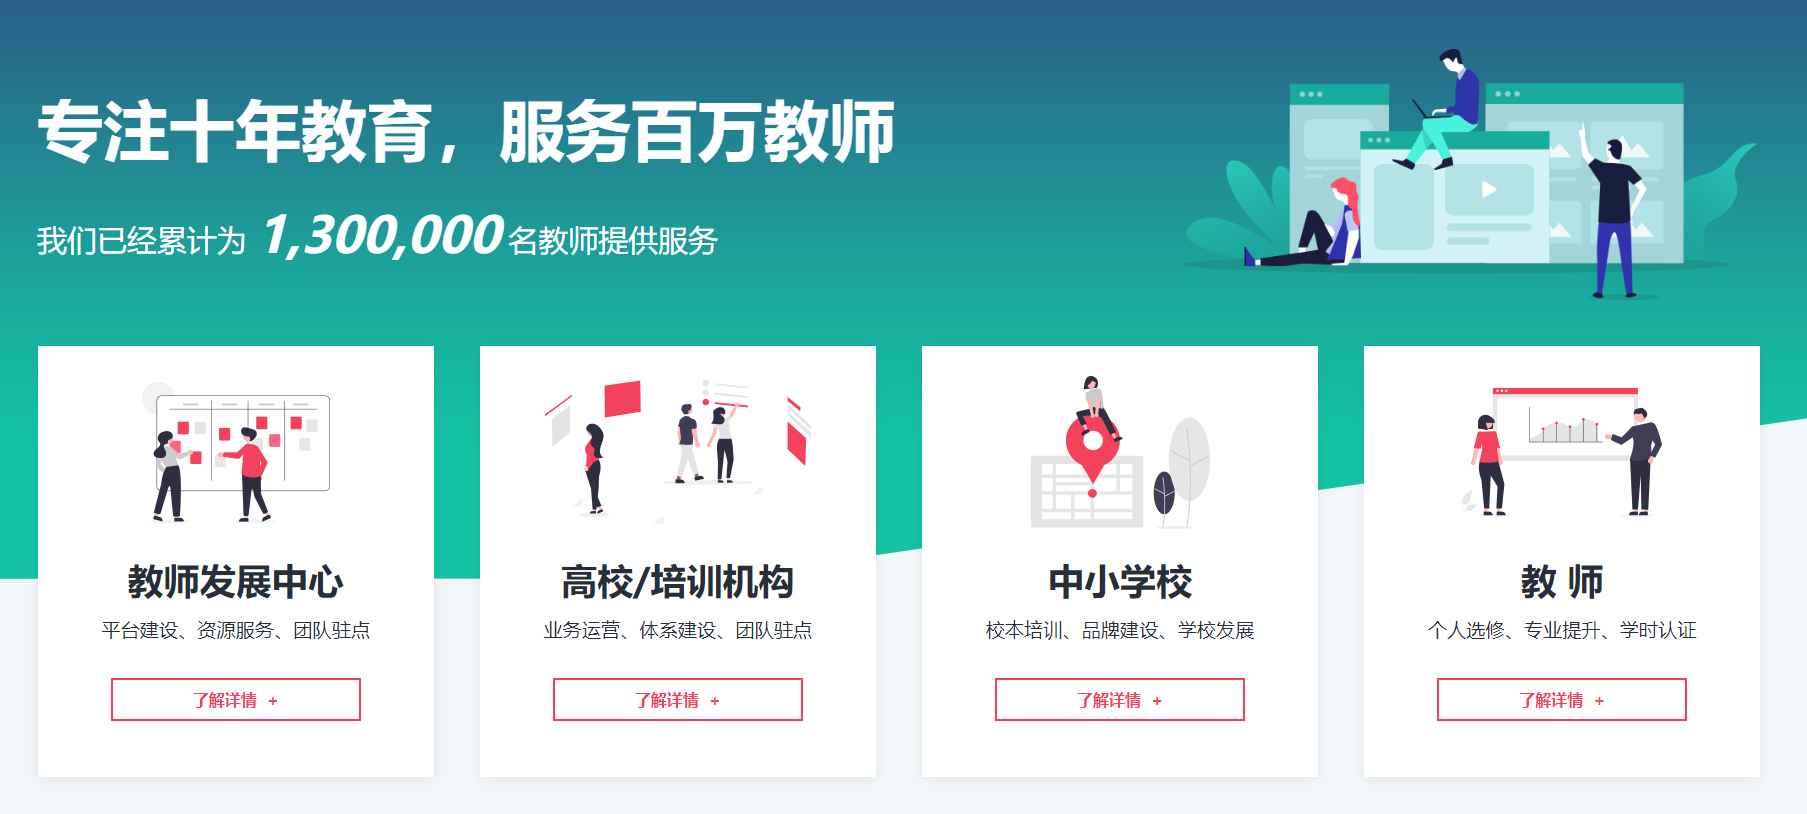 广州昊誉信息科技有限公司薪酬绩效与陪跑式咨询服务